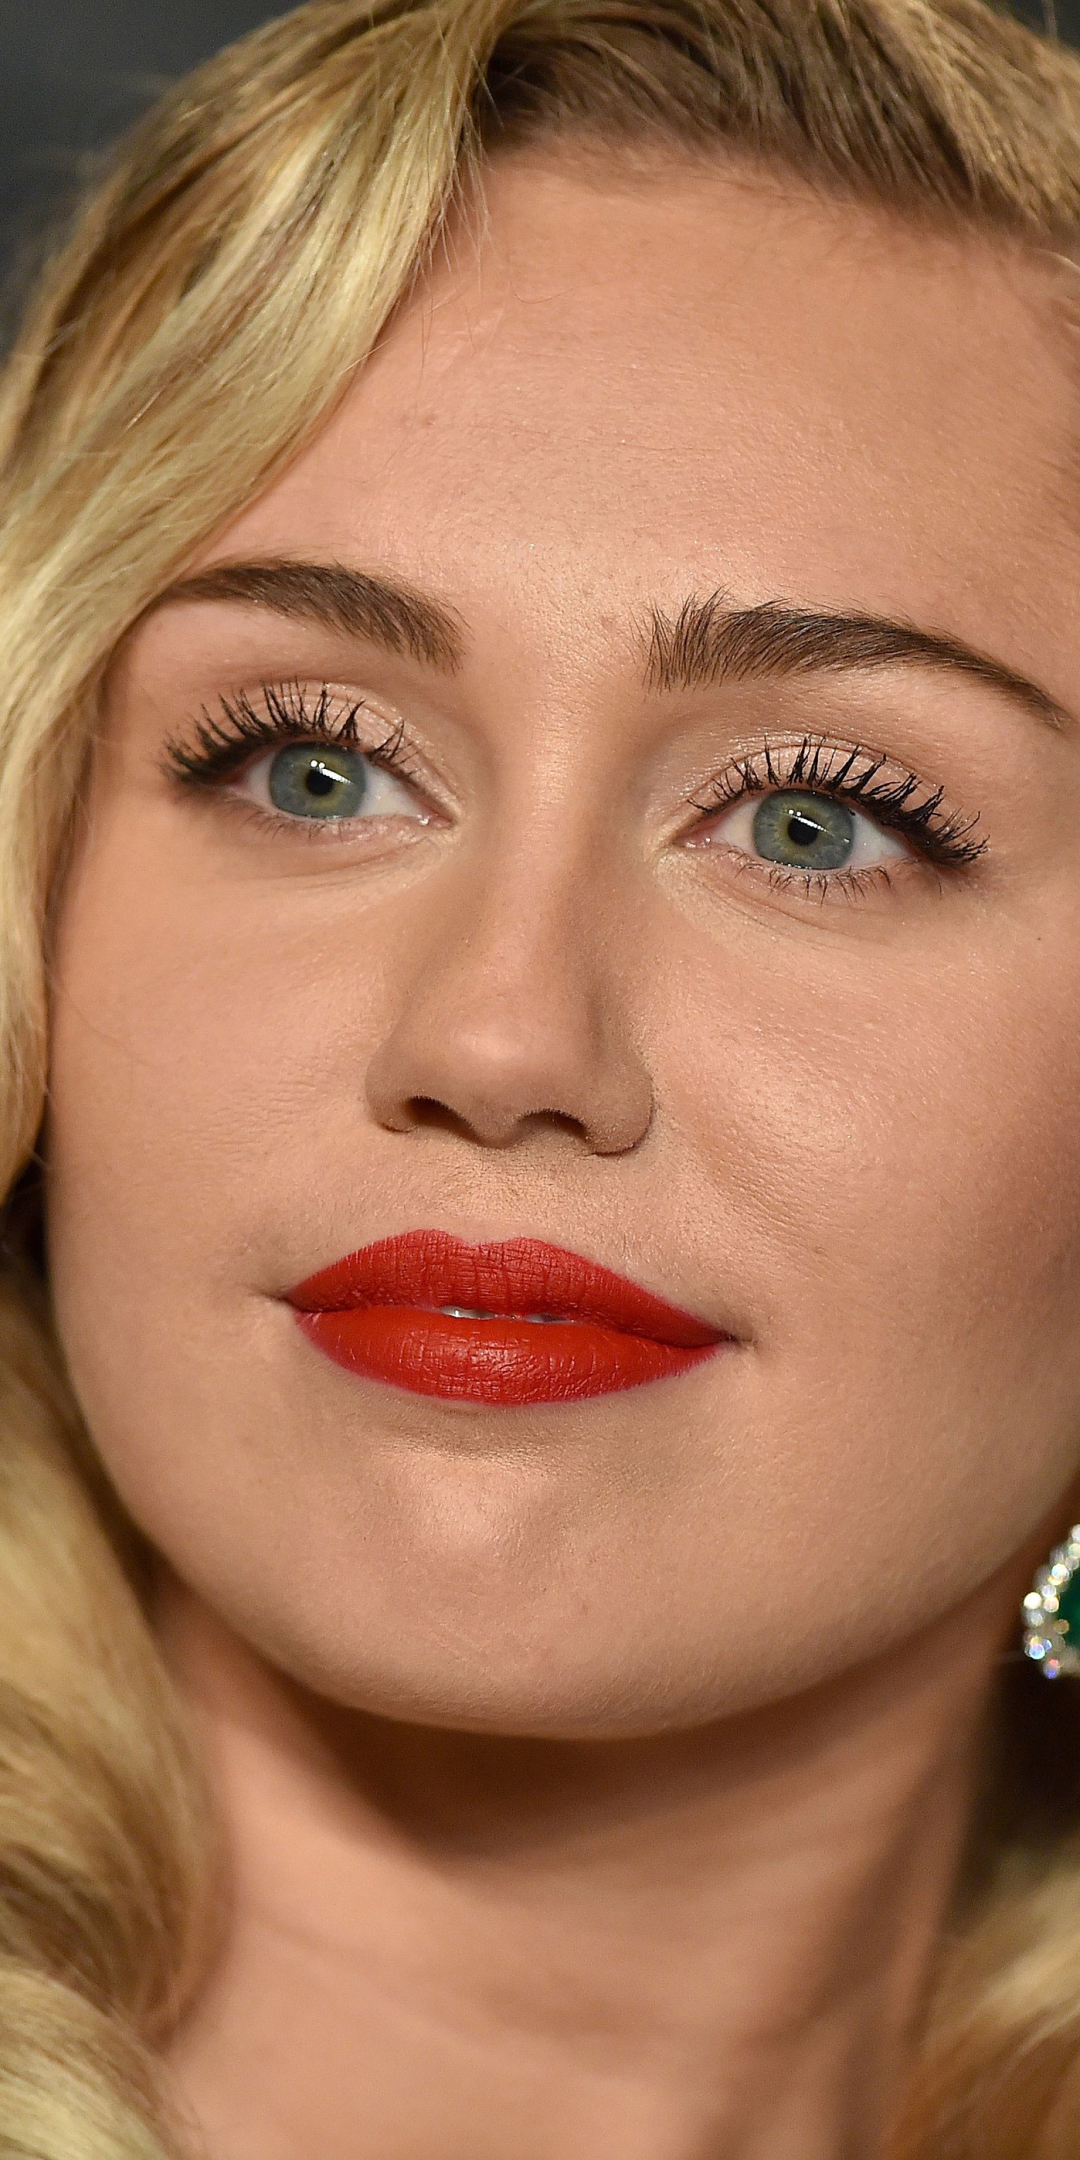 Handy-Wallpaper Musik, Sänger, Blond, Blondinen, Miley Cyrus kostenlos herunterladen.